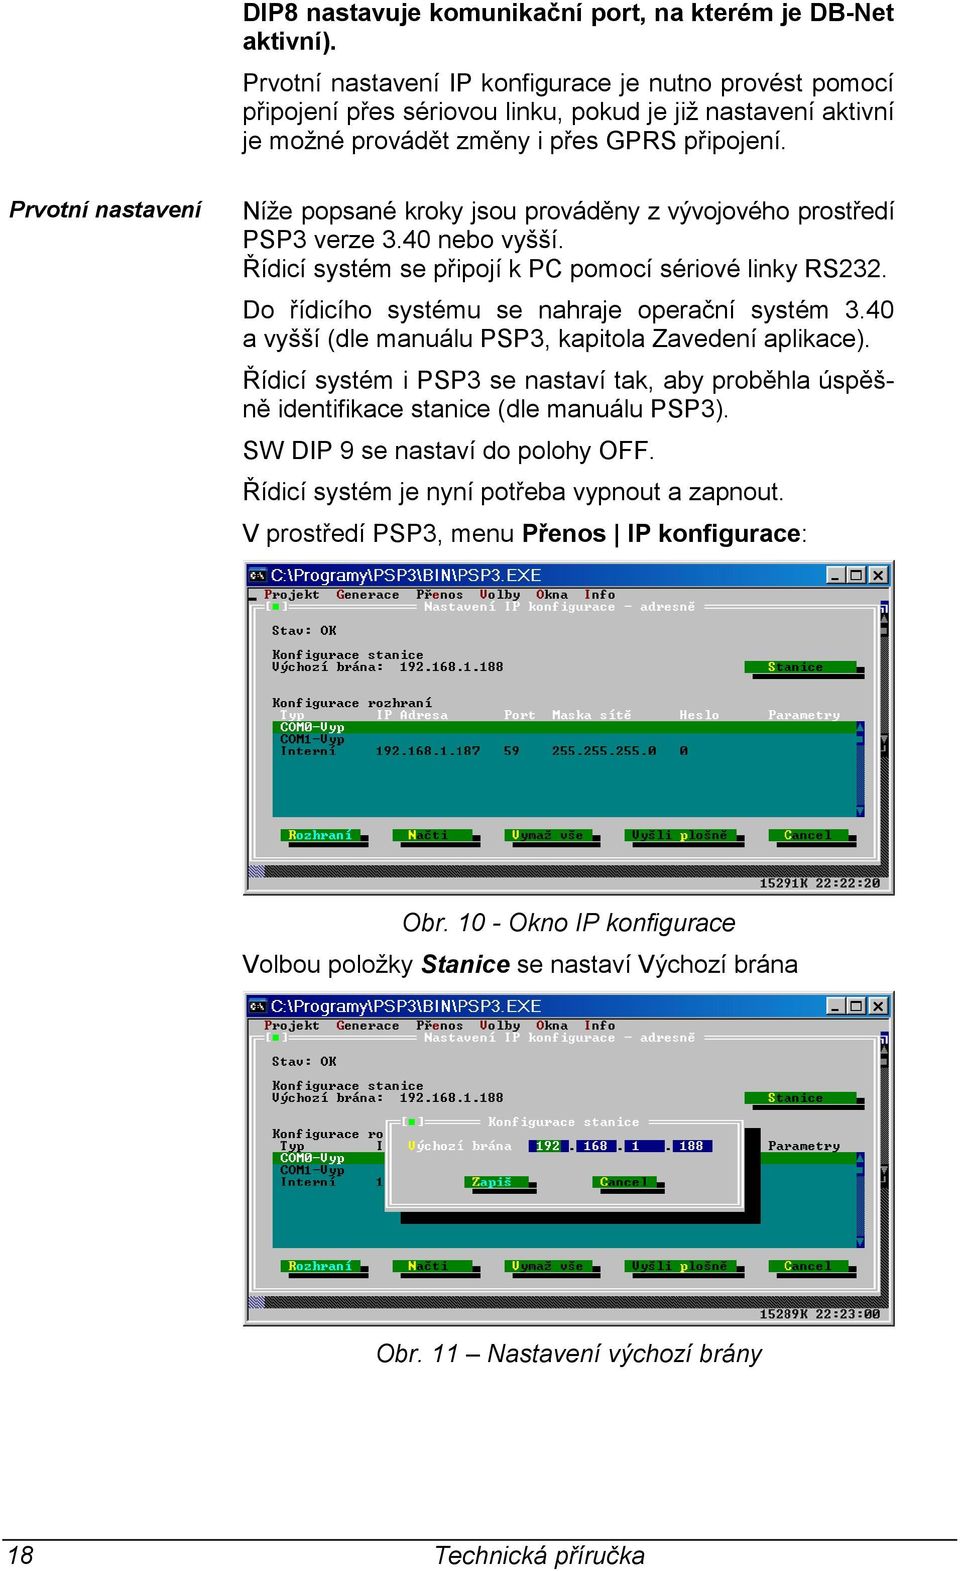 Prvotní nastavení Níže popsané kroky jsou prováděny z vývojového prostředí PSP3 verze 3.40 nebo vyšší. Řídicí systém se připojí k PC pomocí sériové linky RS232.